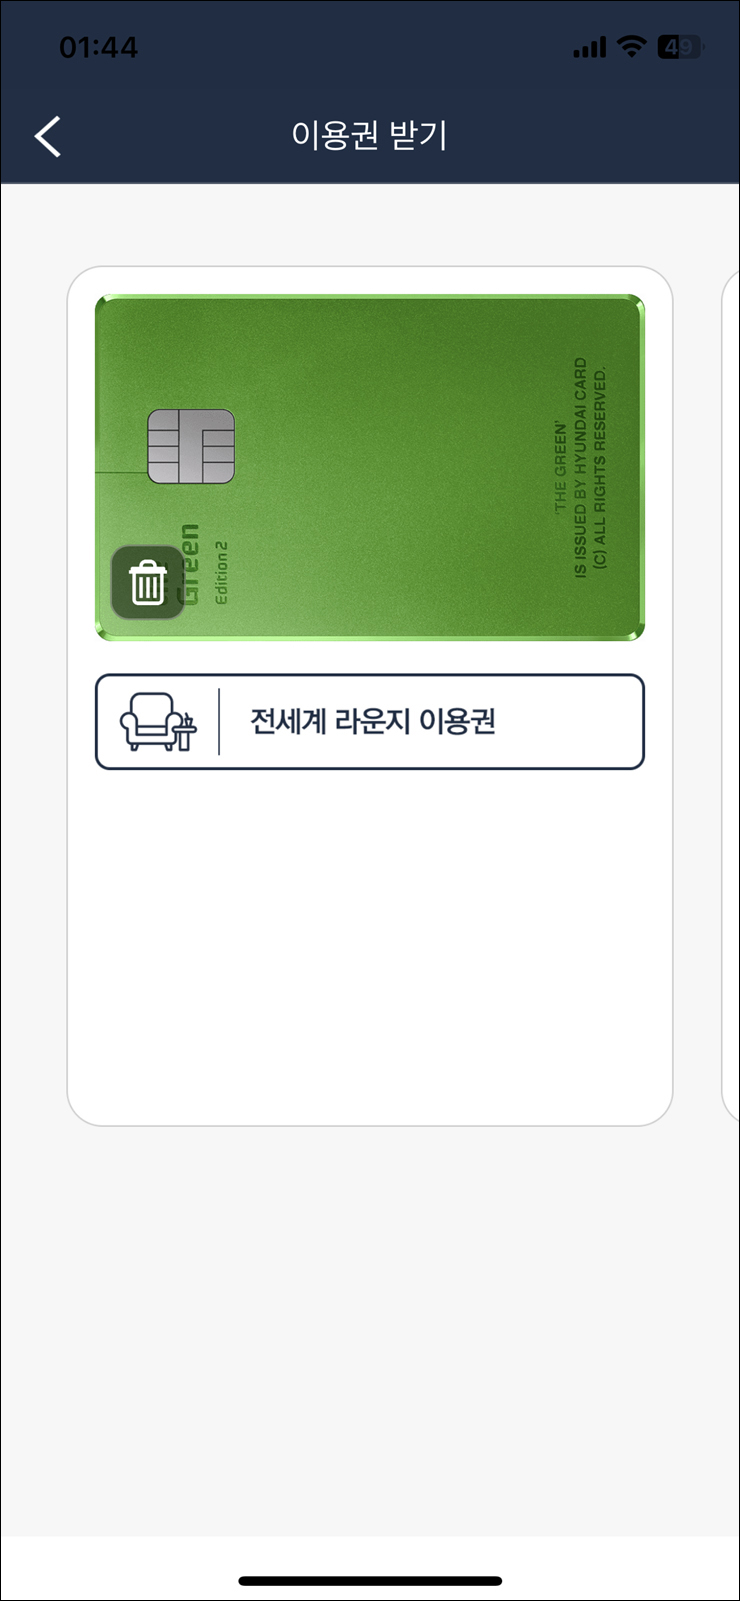 인천공항 출국 인천공항 라운지 카드 마티나라운지 이용권 가격 위치 시간